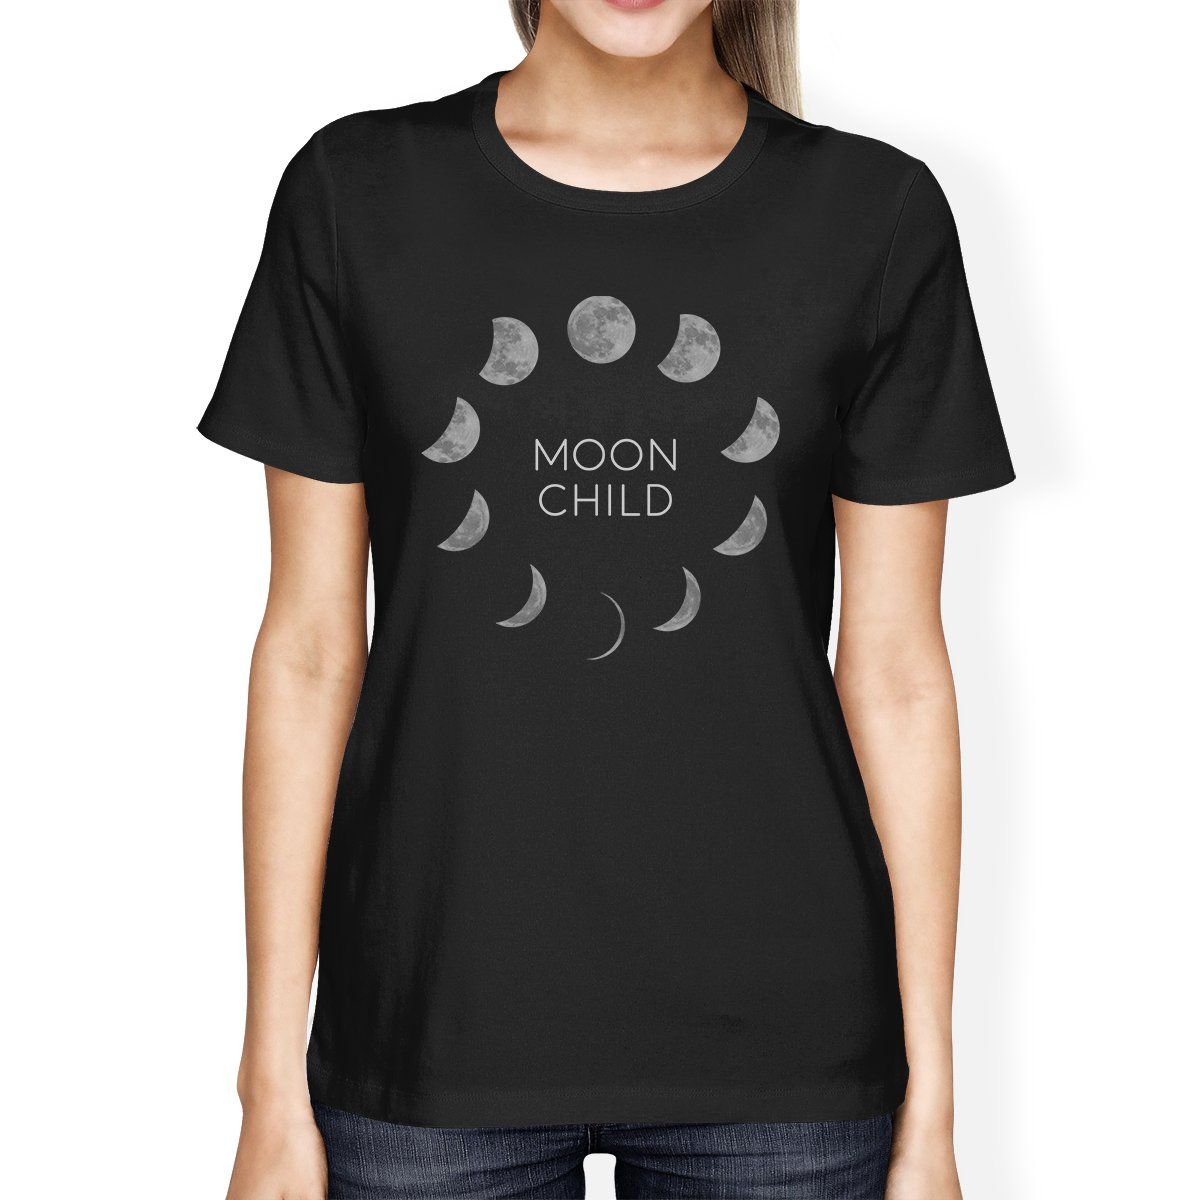 Falsehood Think ahead Accustom Moon Child Black T-Shirt - Kuarki - Lifestyle Solutions